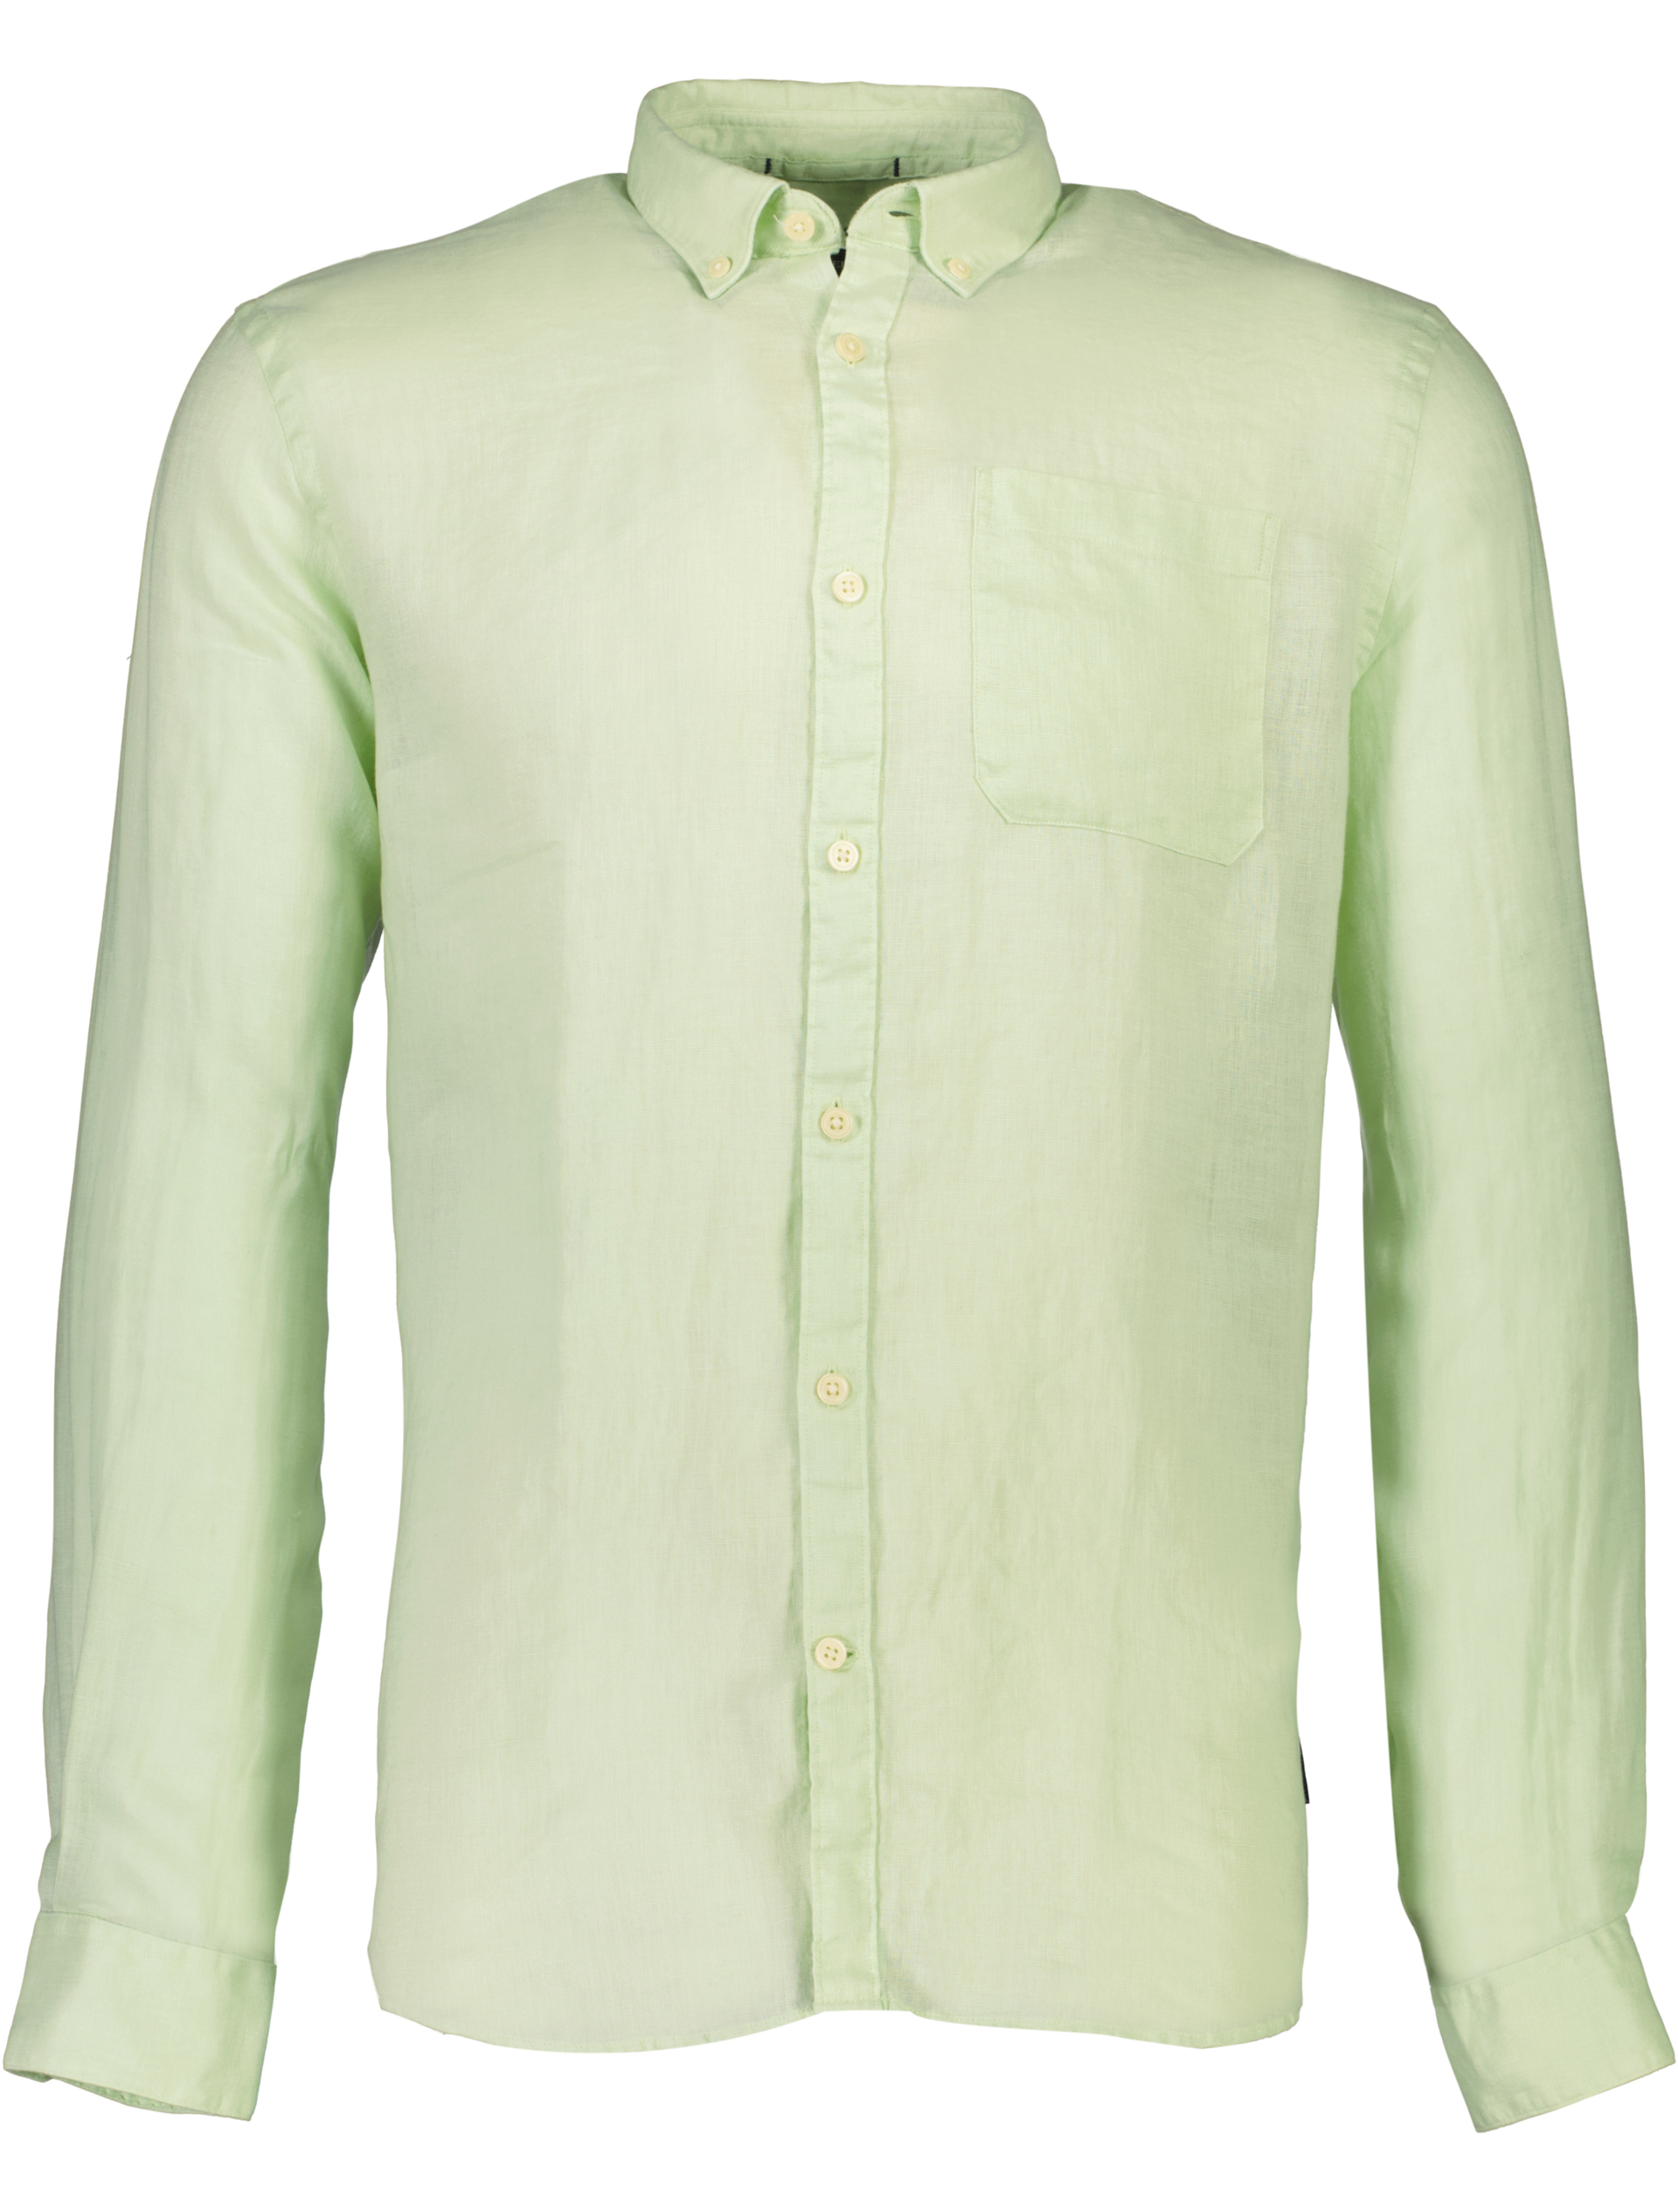 Lindbergh Linnen overhemd groen / mint green